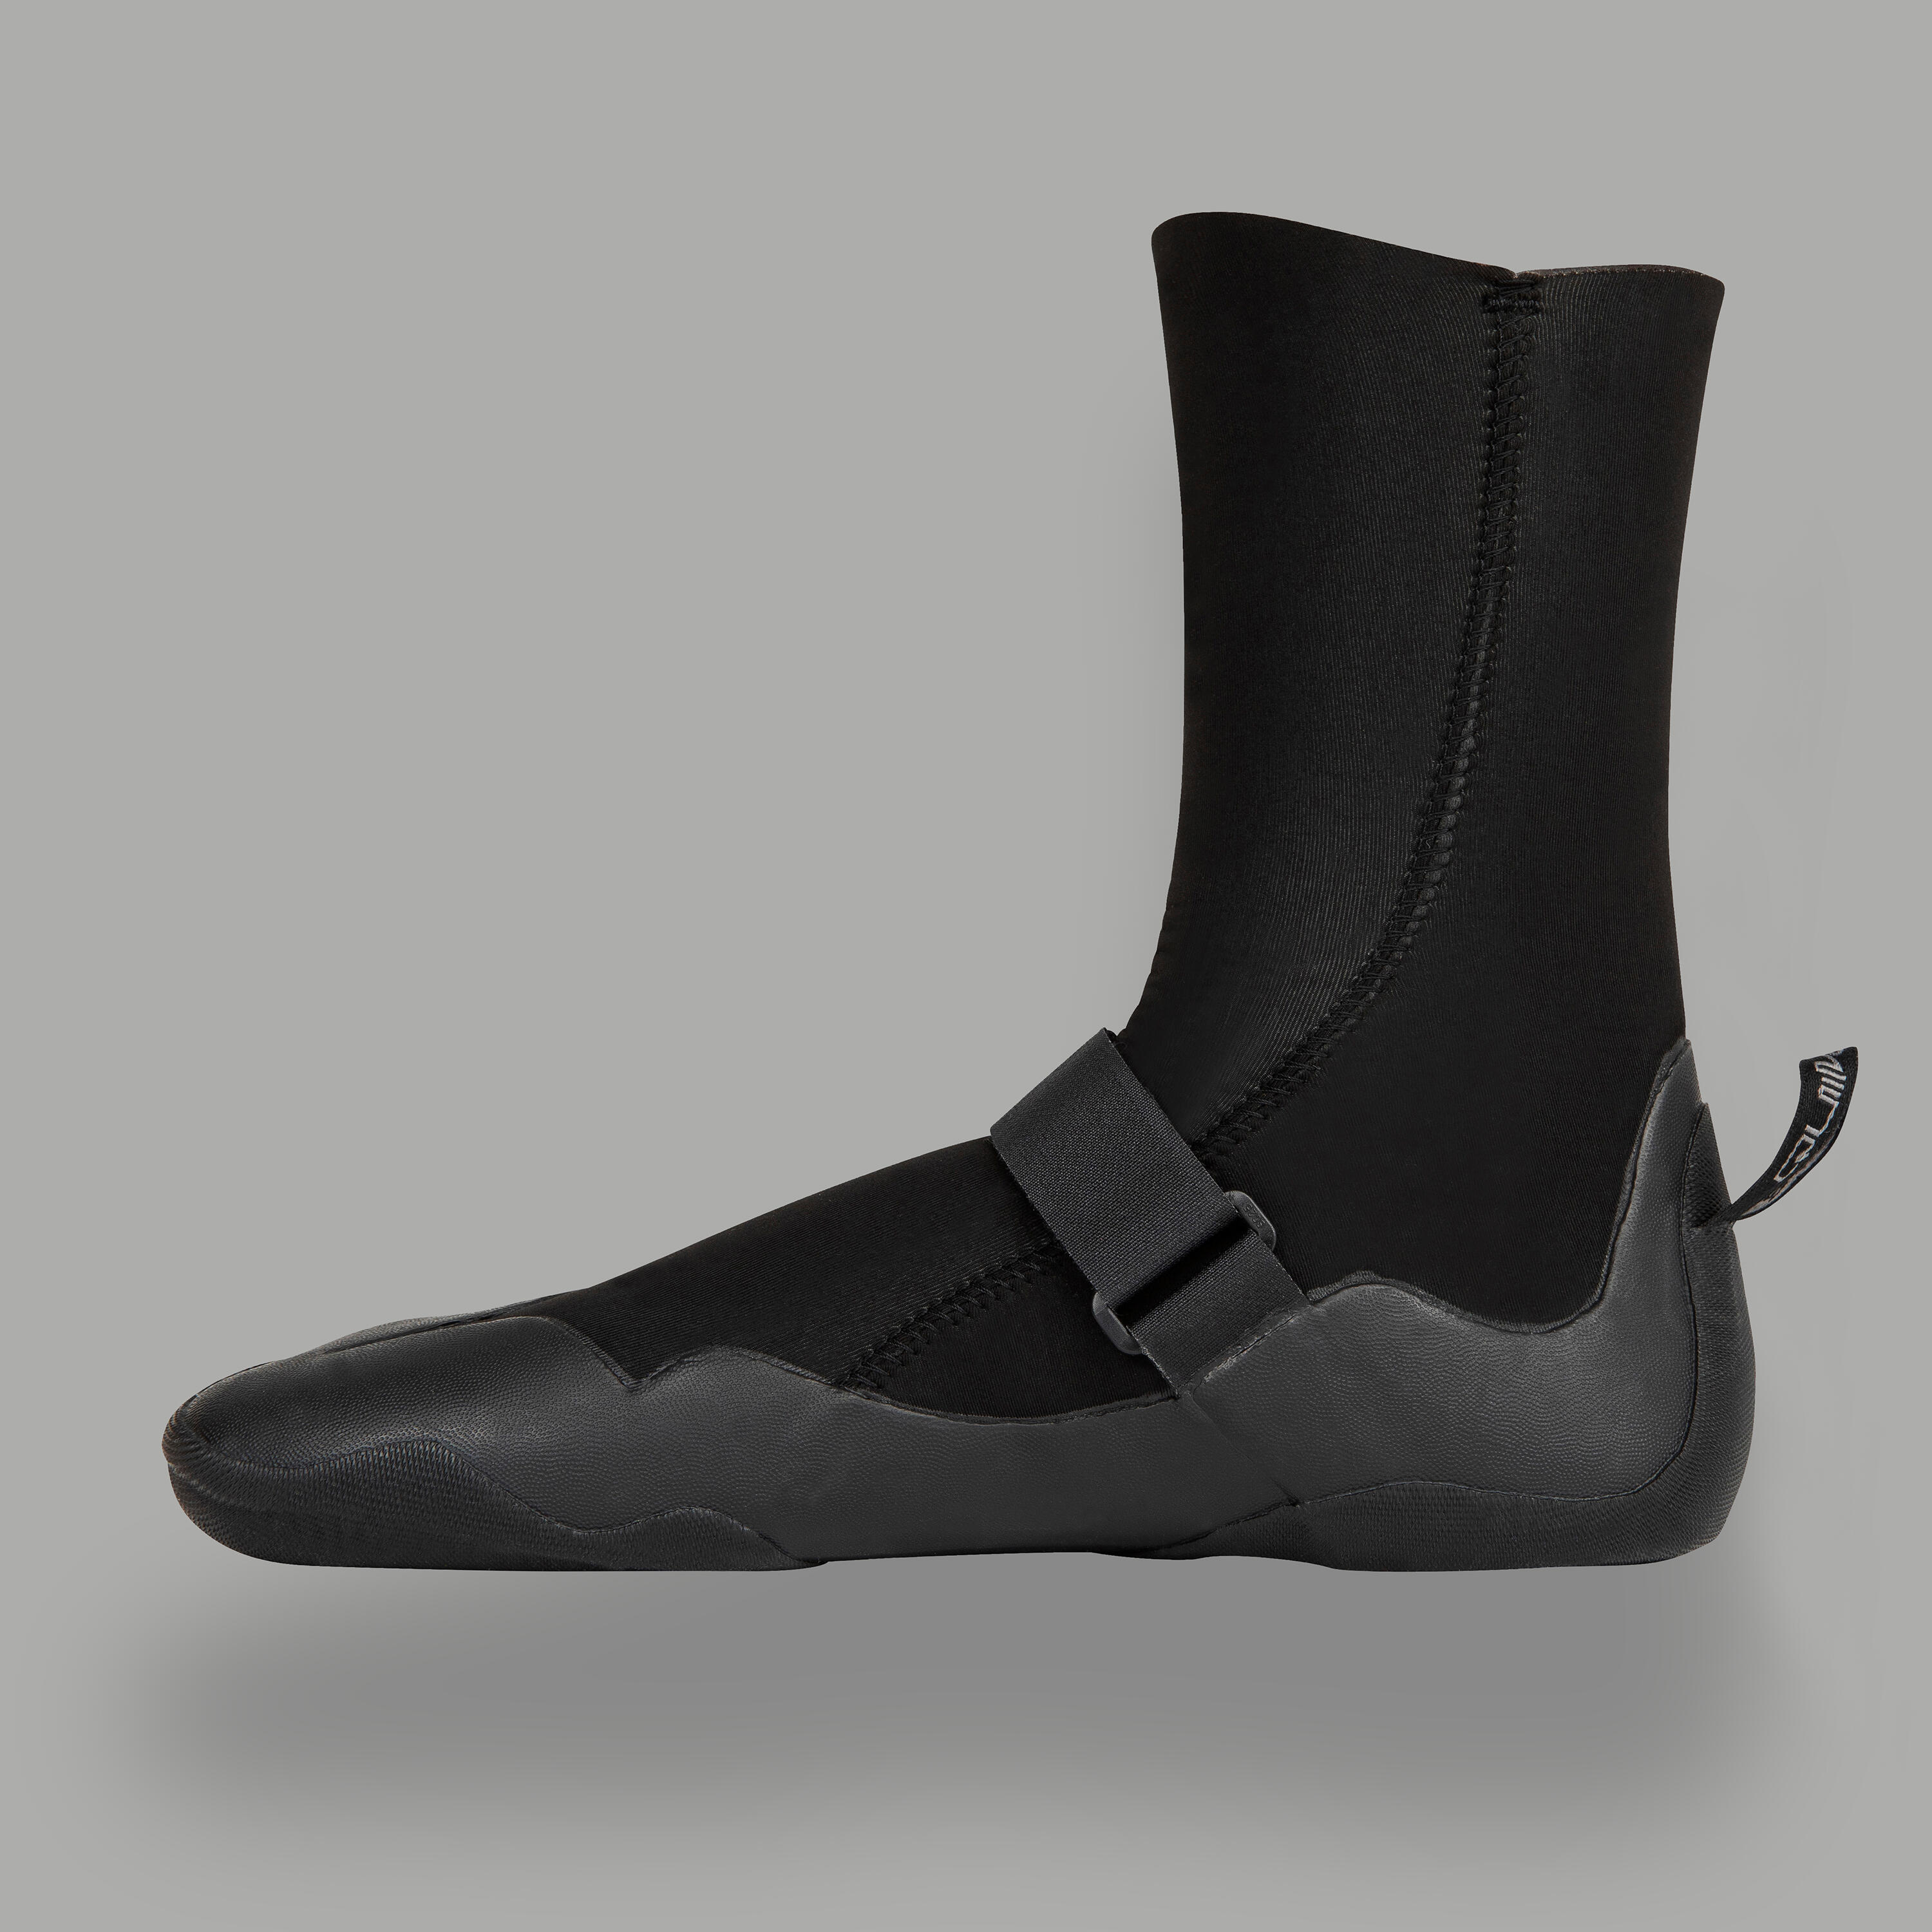 Quiksilver surfing boots 5mm neoprene - Black 6/8